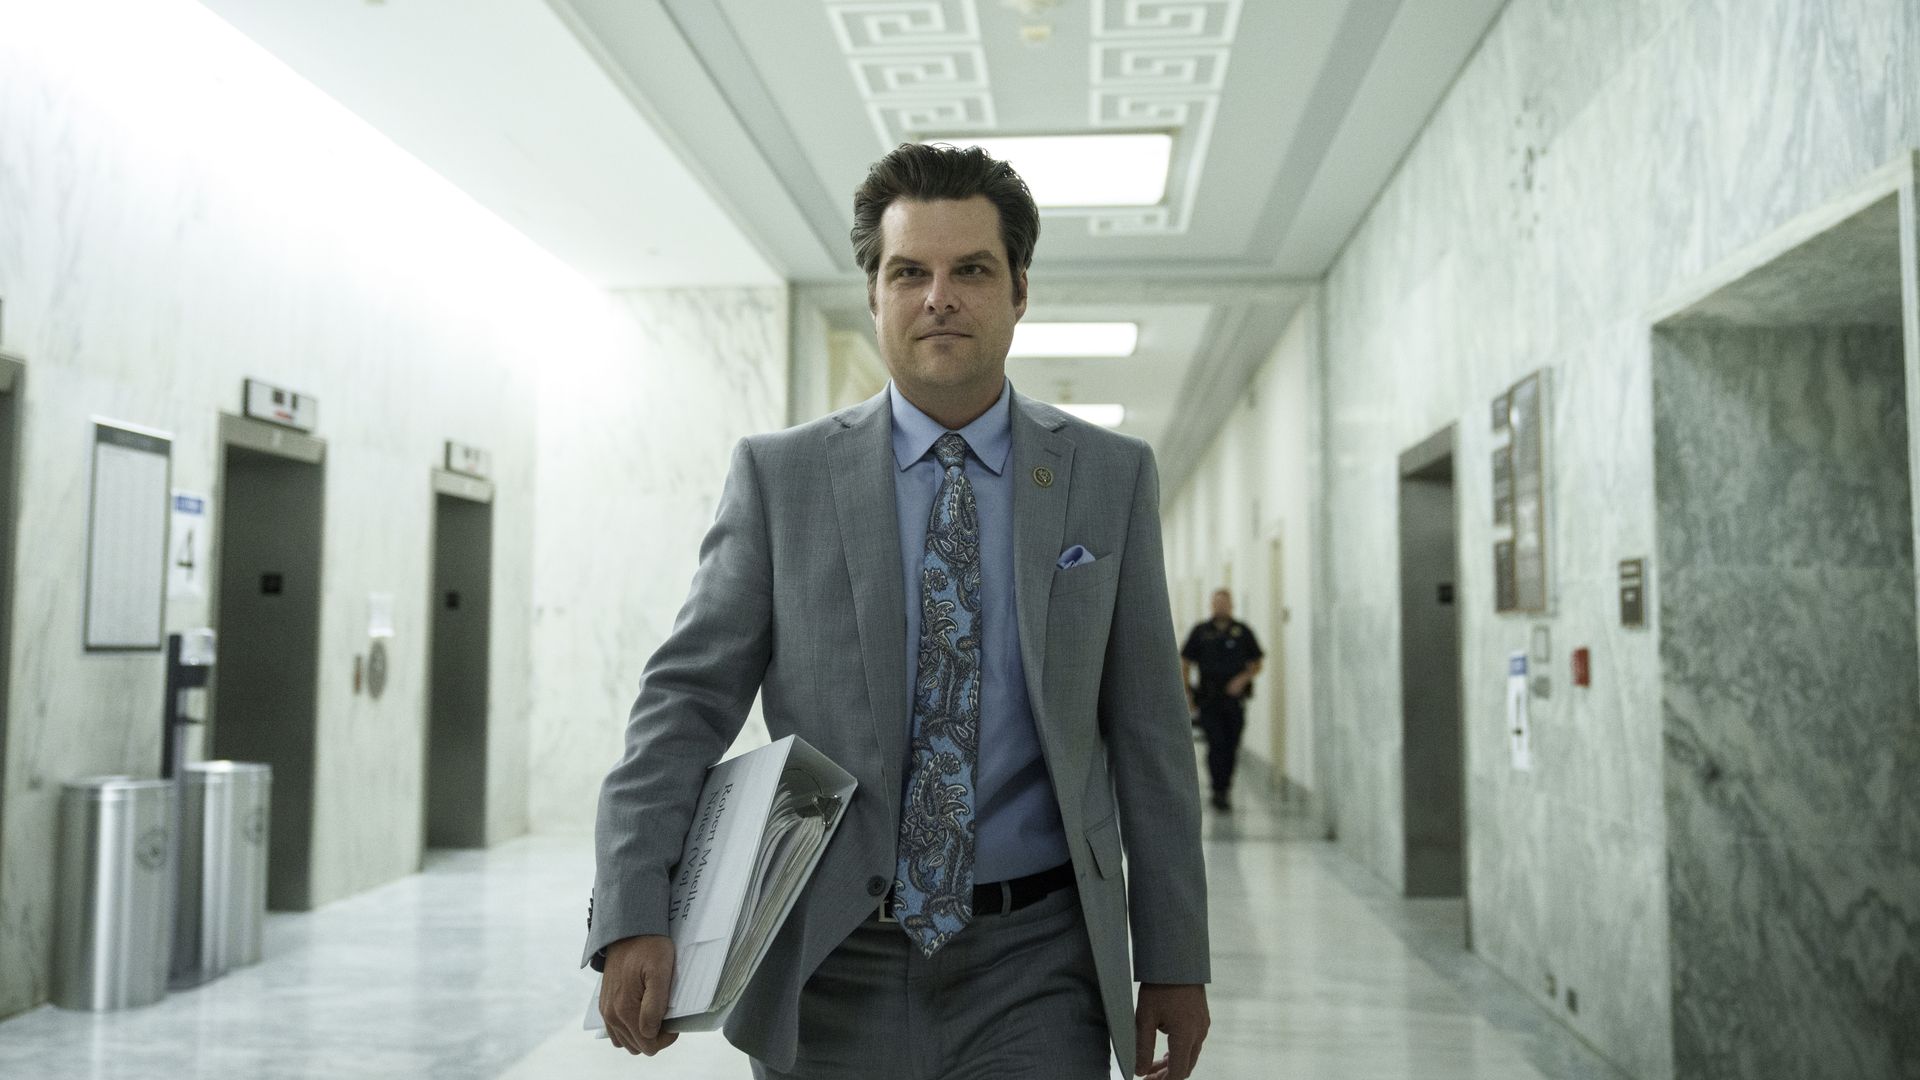 Rep. Matt Gaetz is seen walking down a hall in Congress.